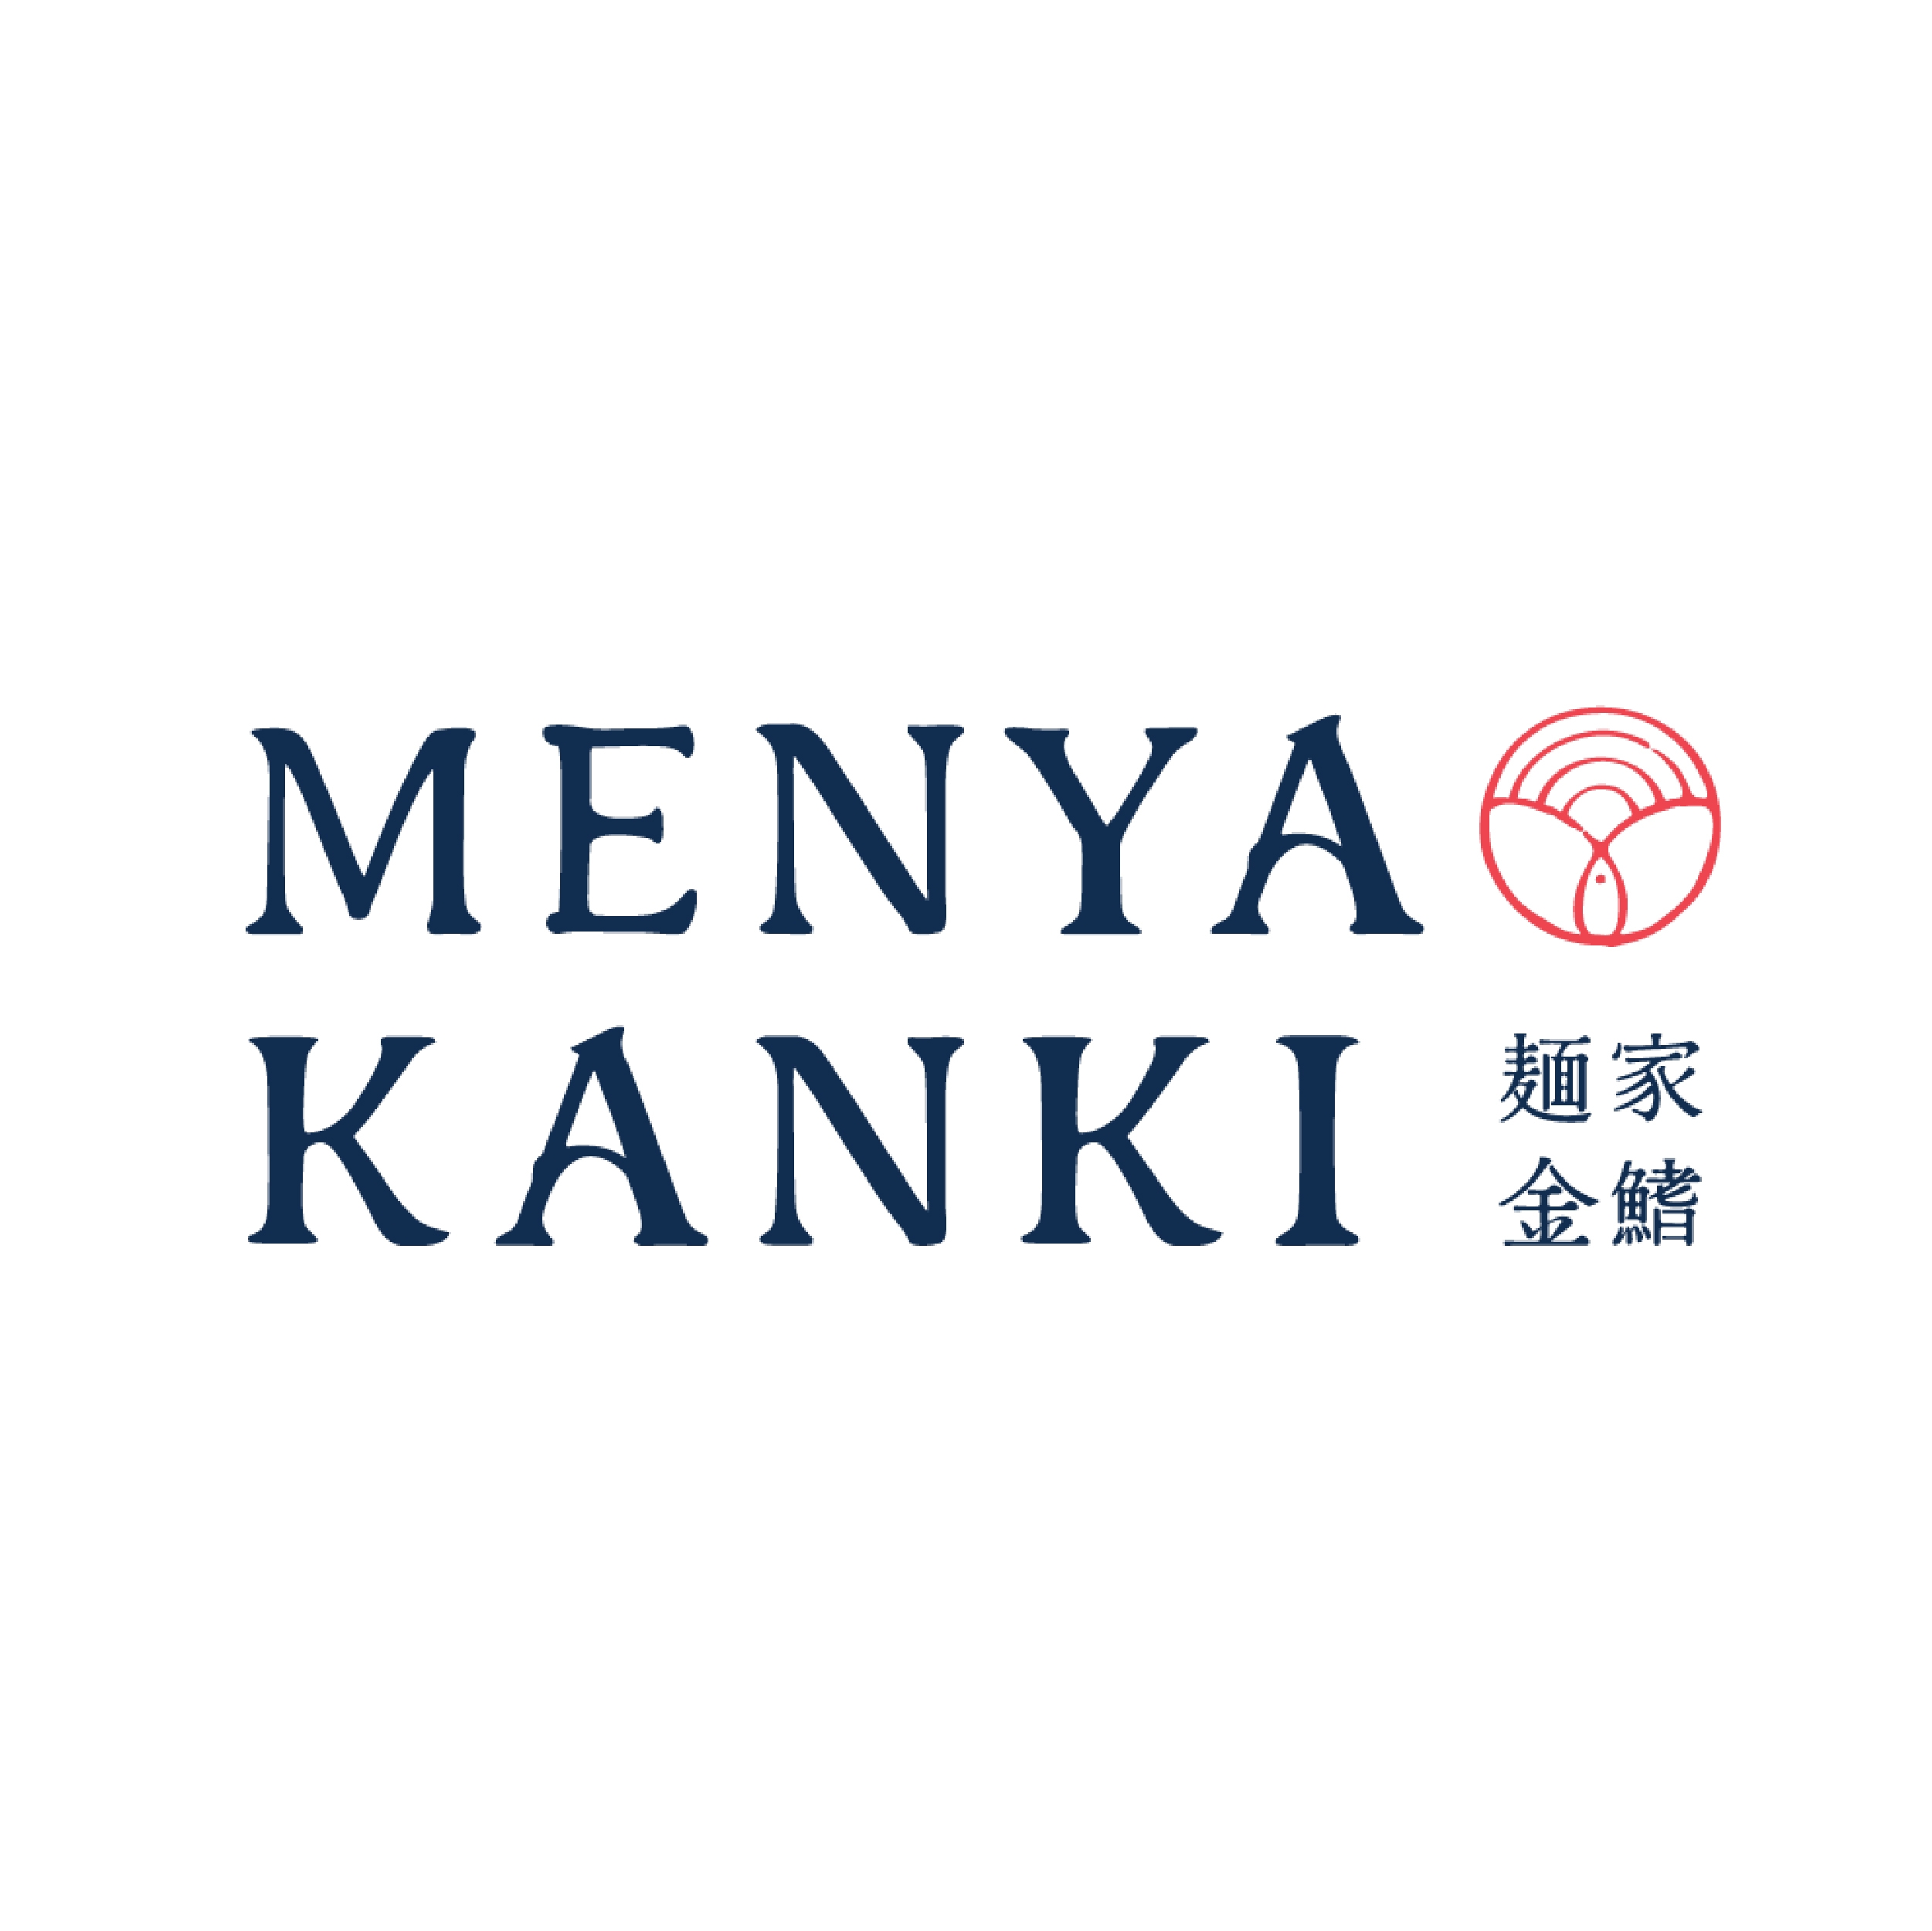 Menya_Mall-02_logo.jpg